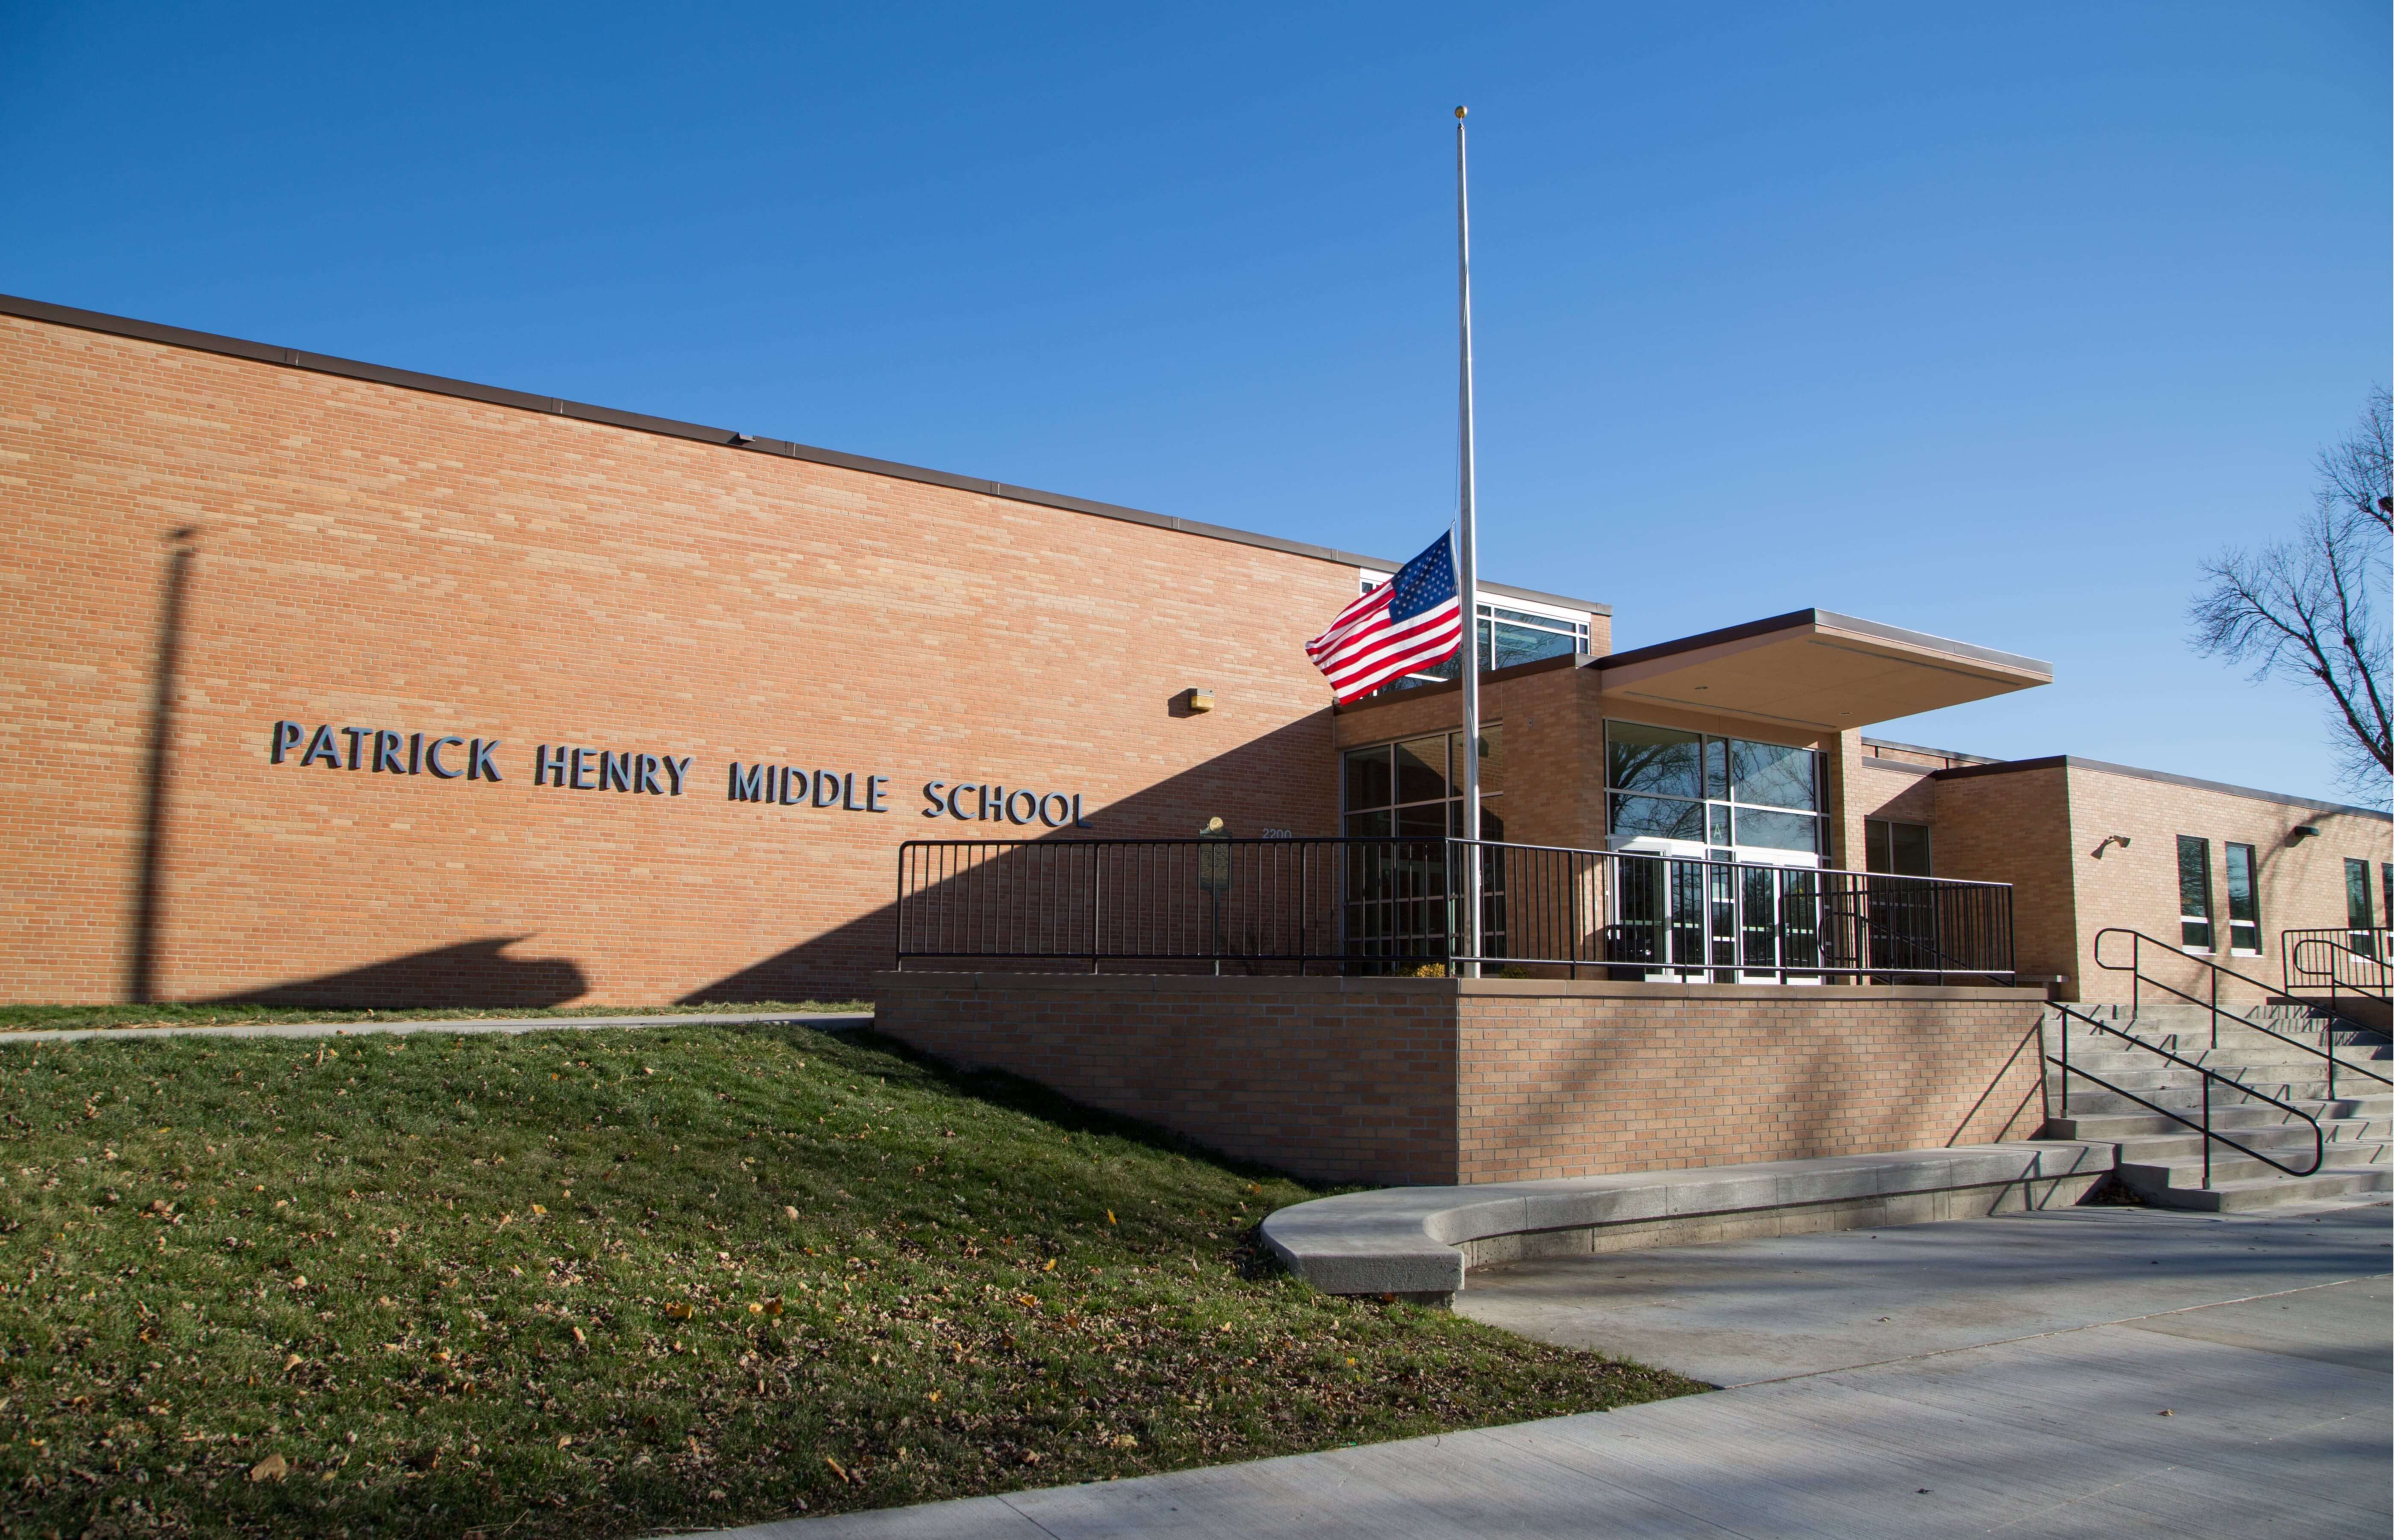 Patrick Henry Middle School